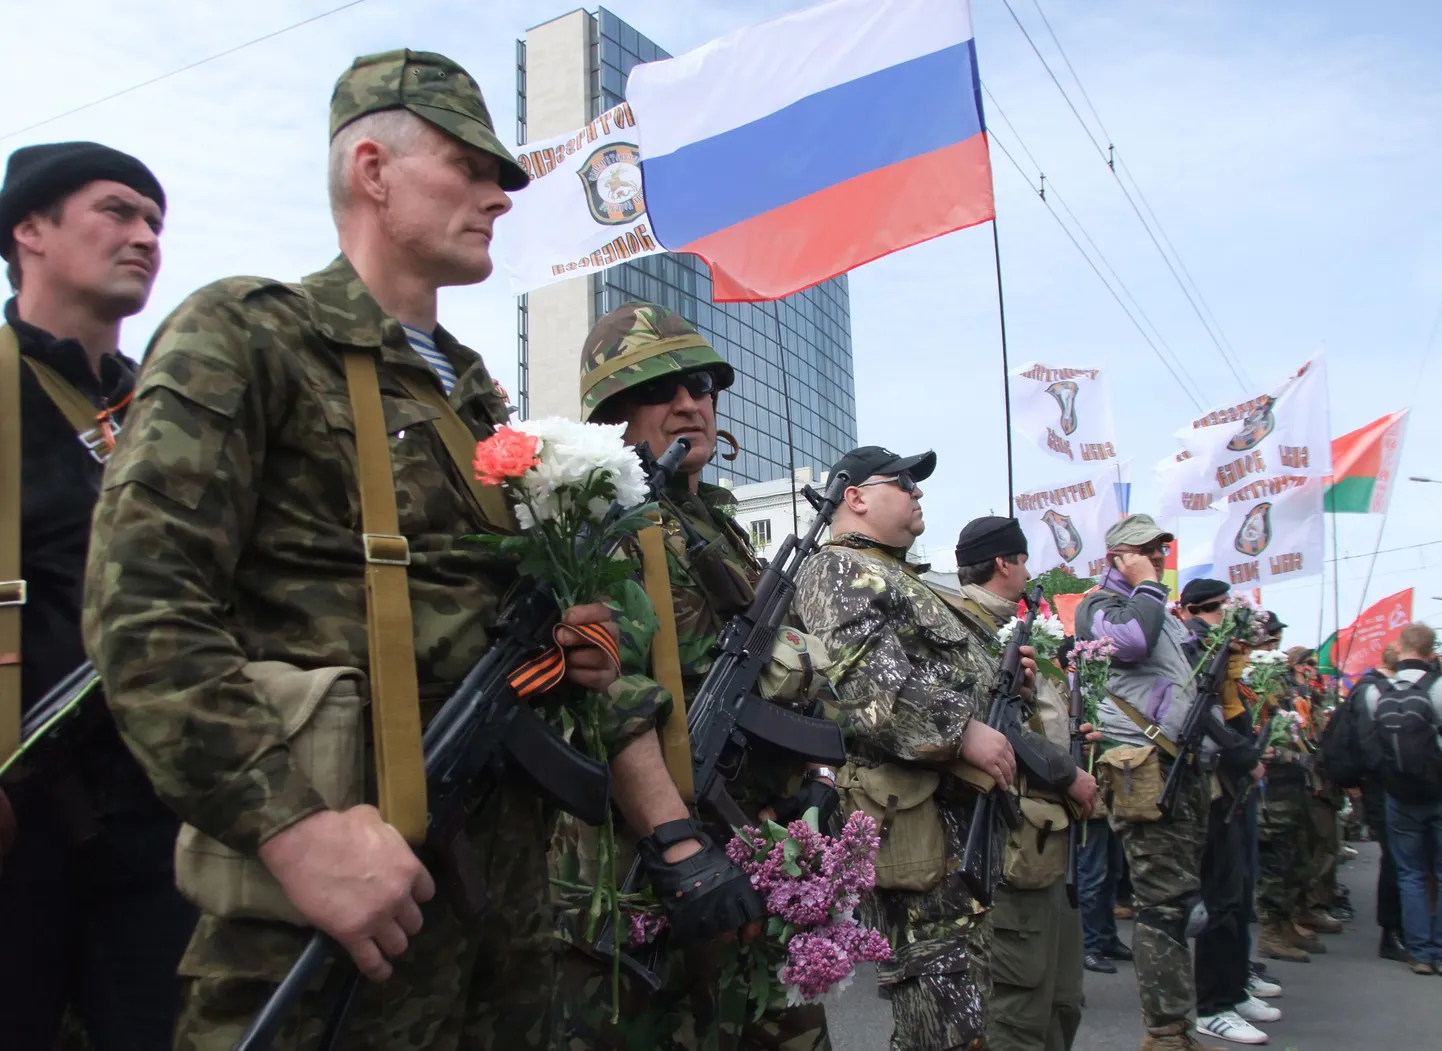 Föderalsimi poolehoidjad võtsid Donetskis 9. mail ühtsesse ritta.